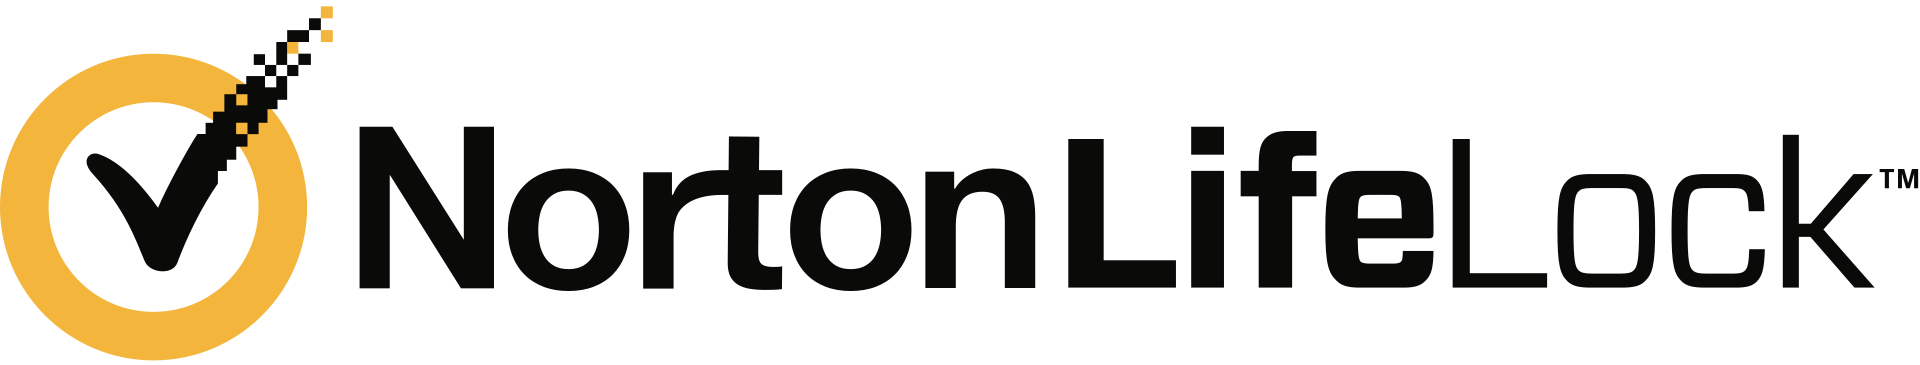 Broadcom - NortonLifeLock (Symantec)